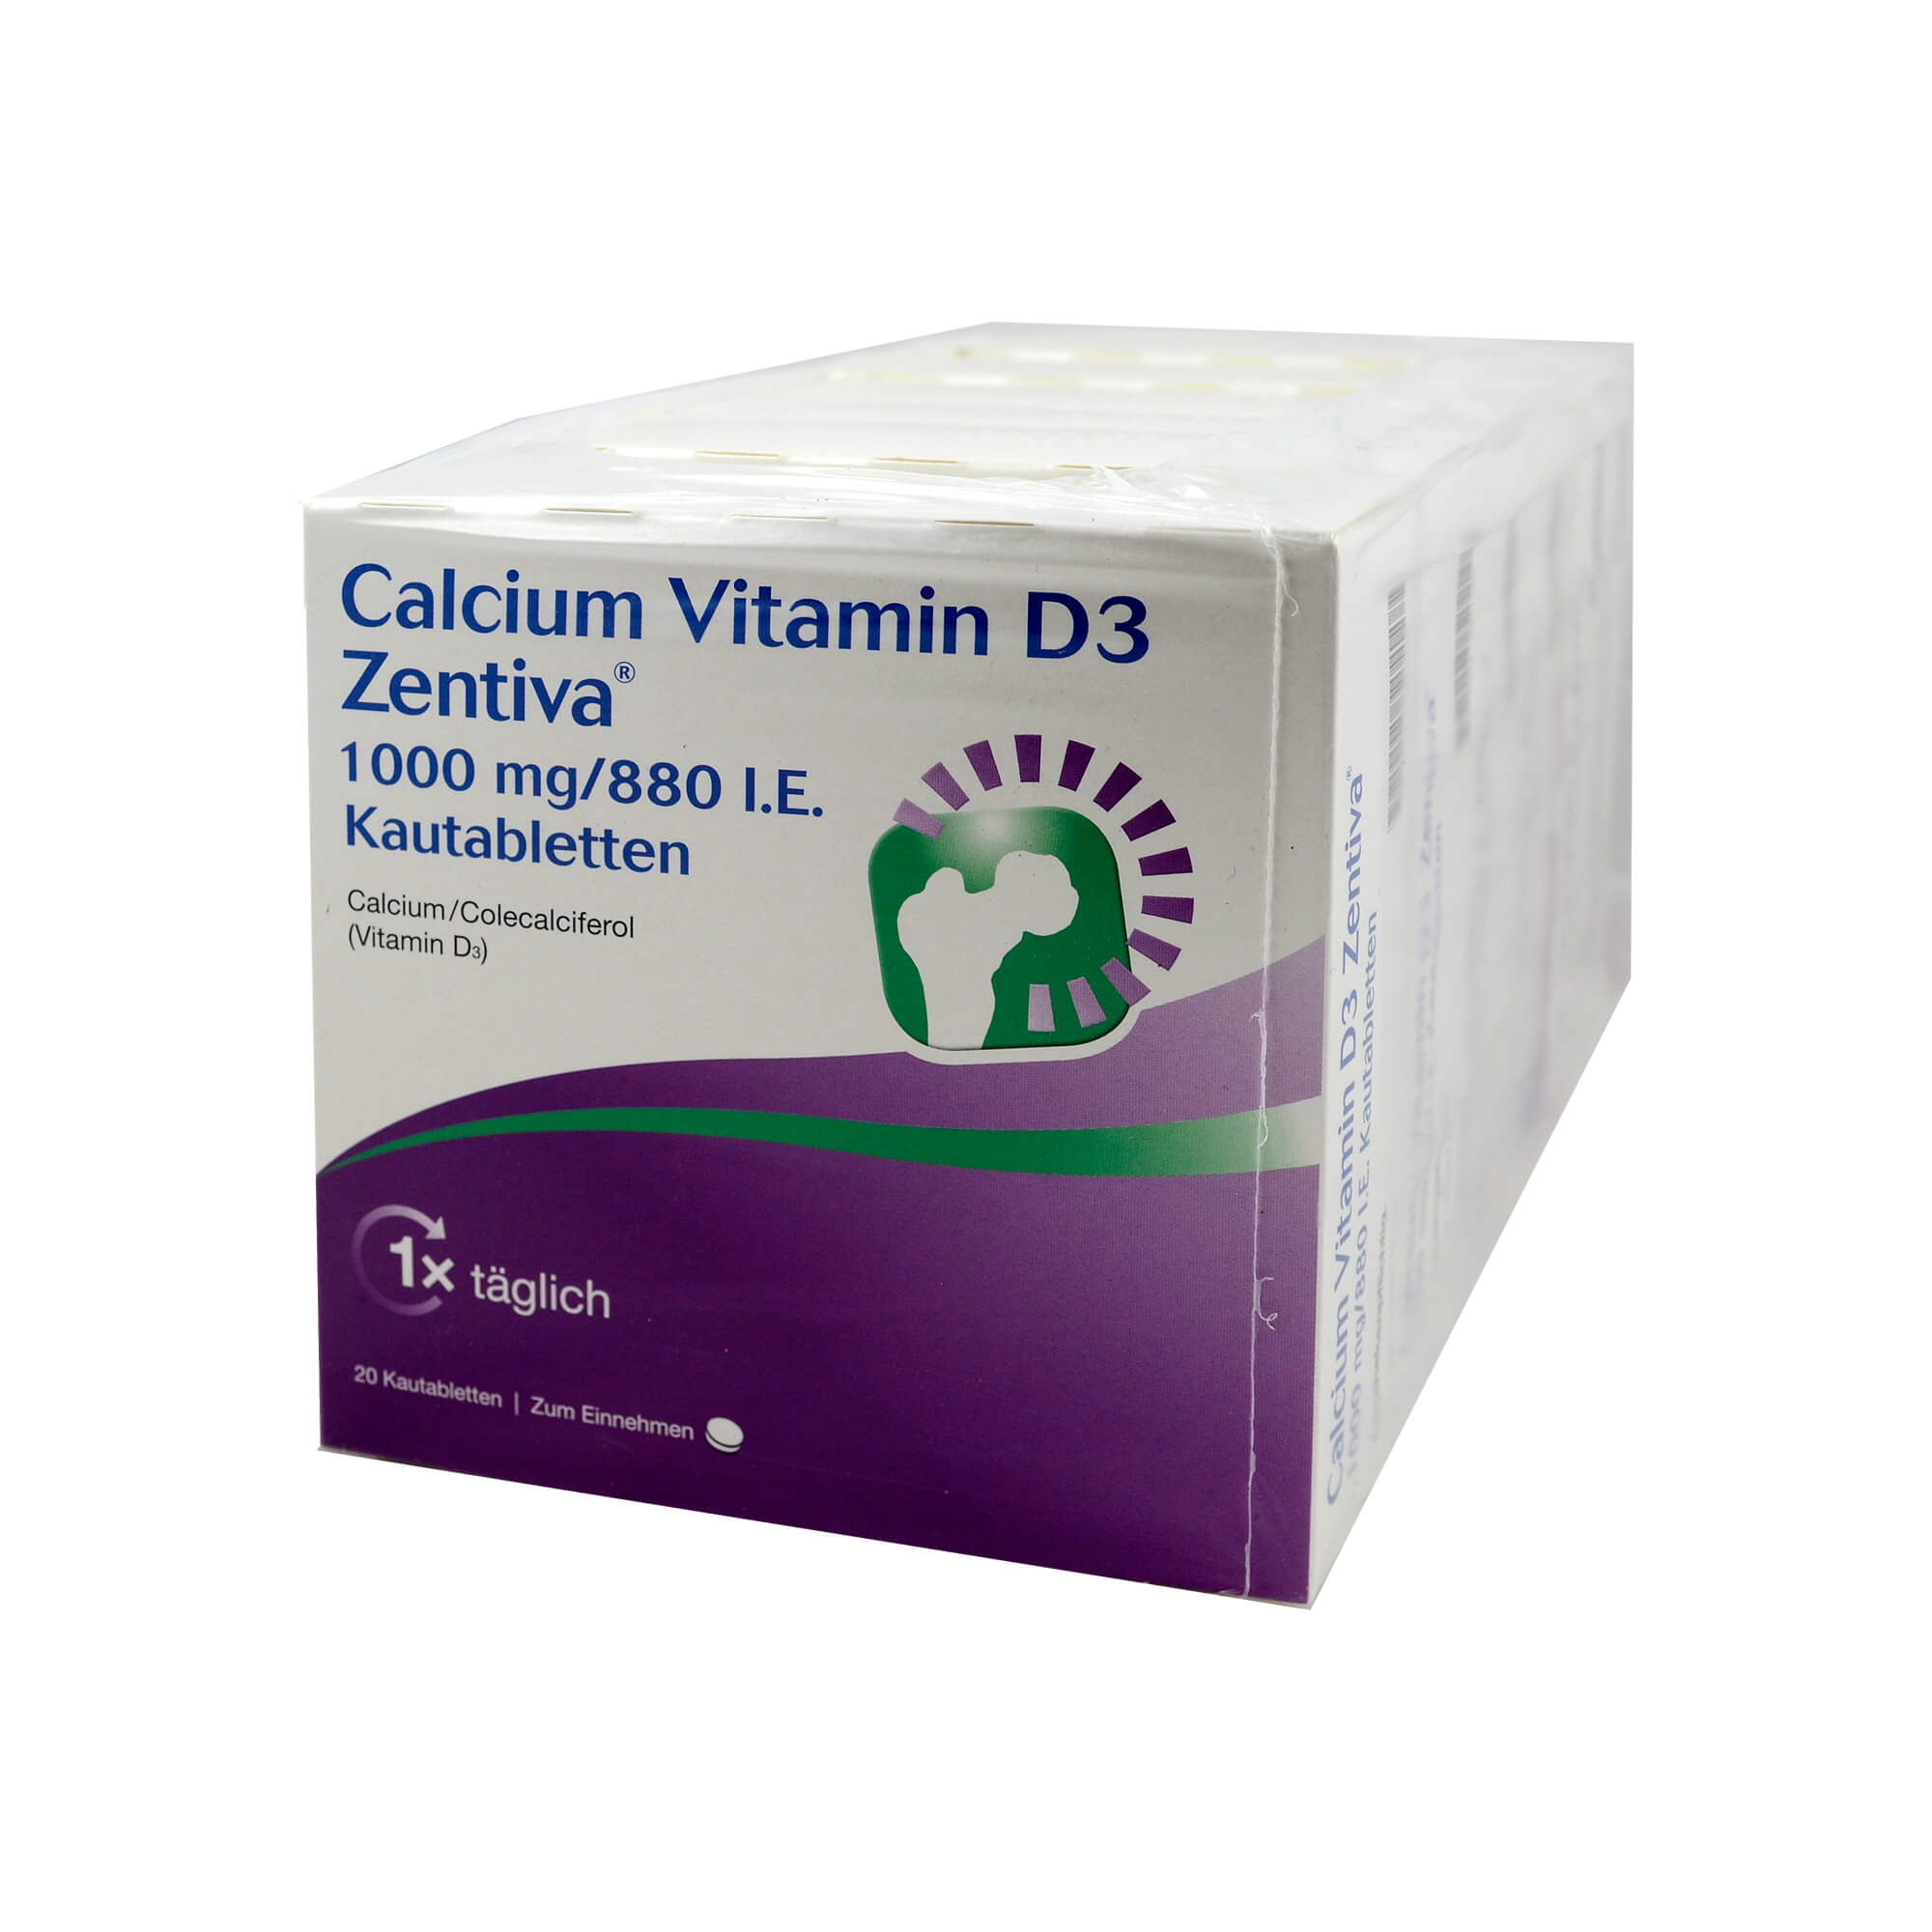 Zur Prophylaxe und Behandlung von Calcium- und Vitamin-D-Mangelzuständen bei älteren Menschen.